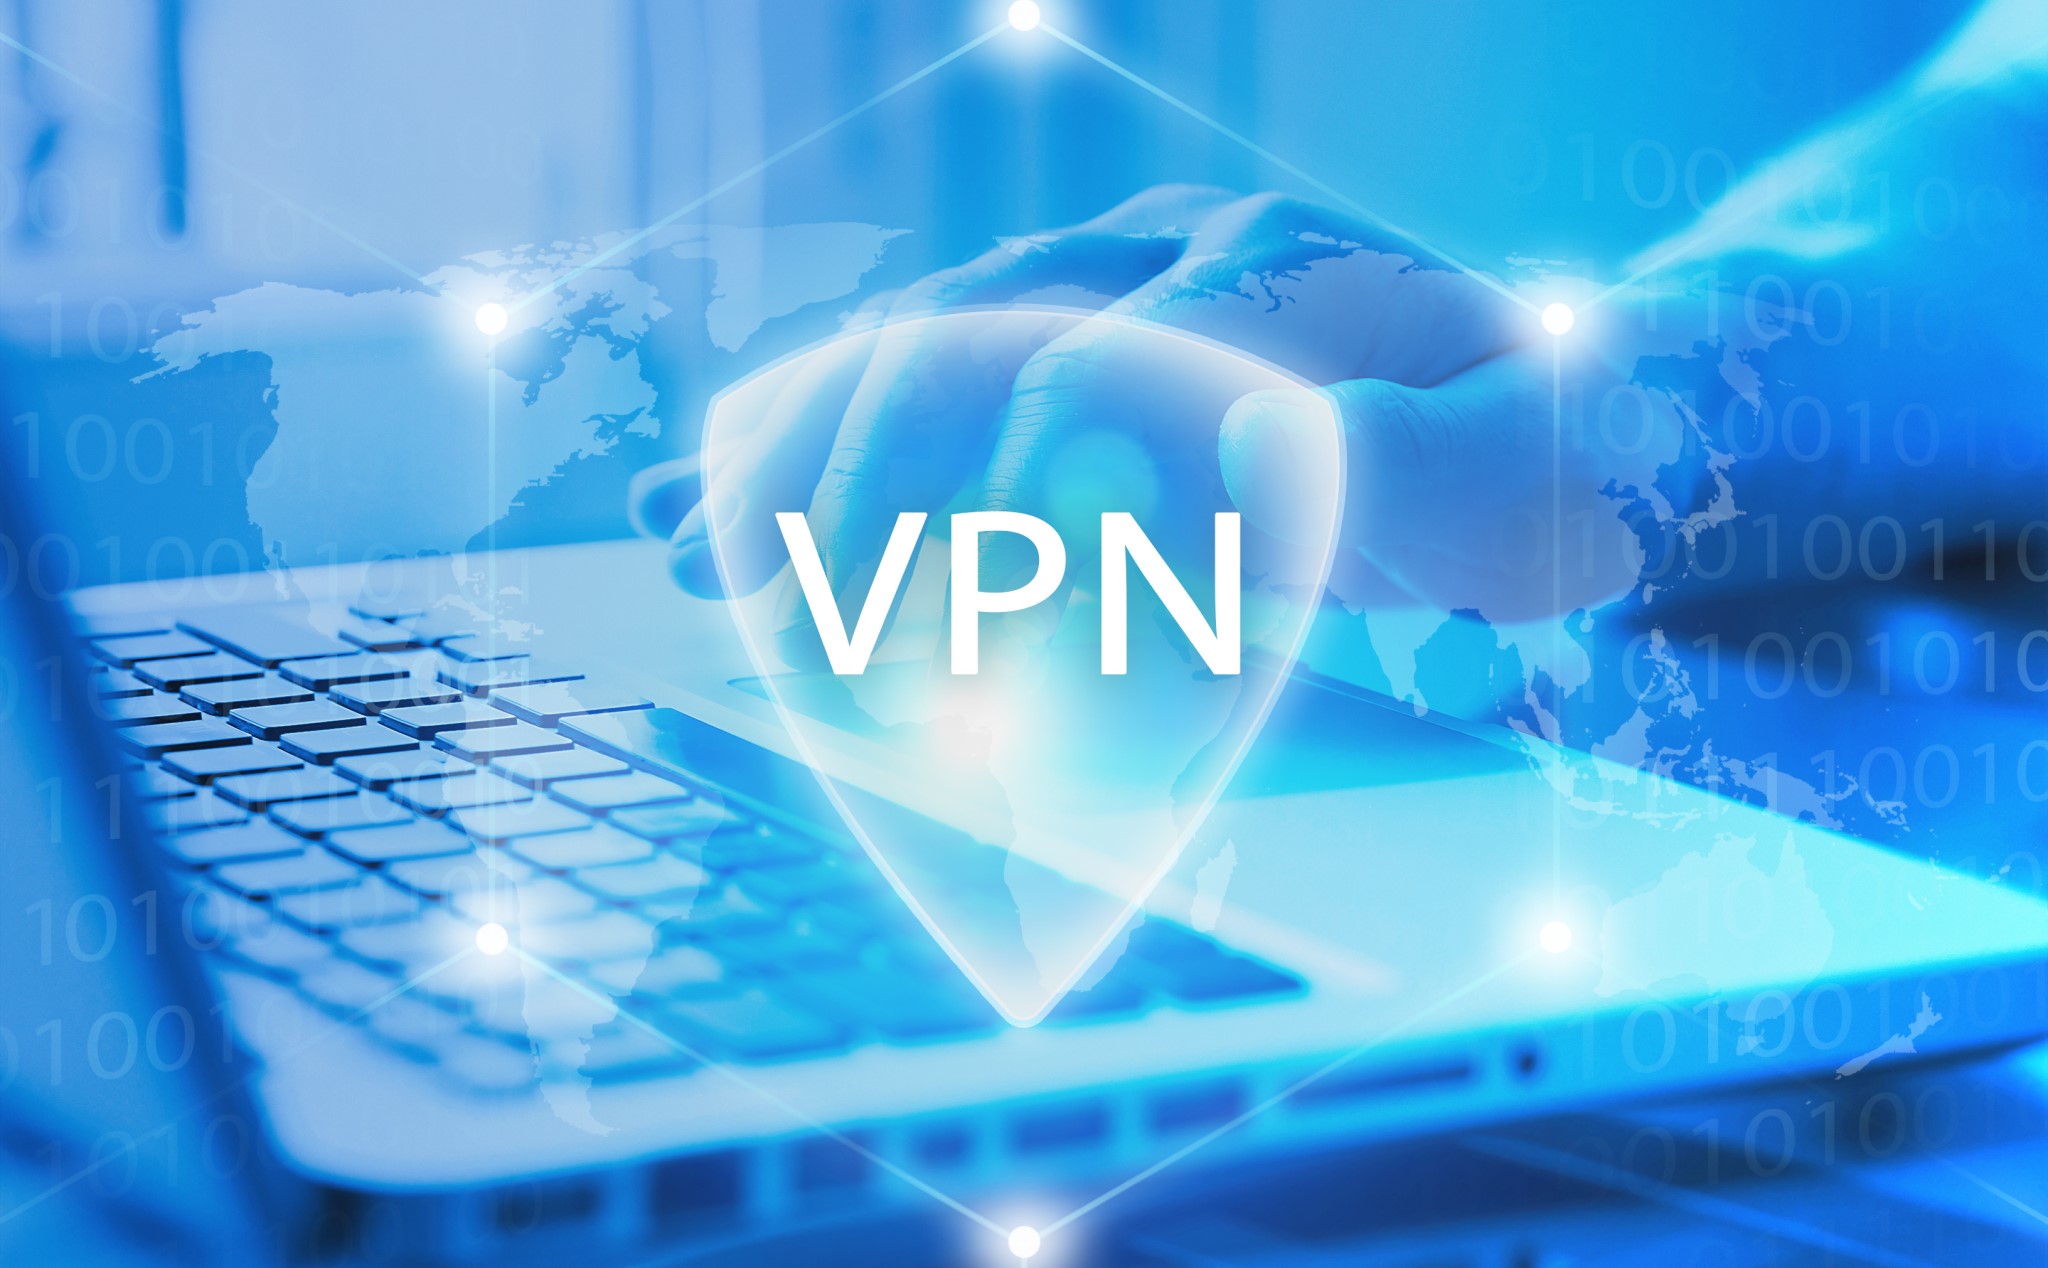 Các nhà cung cấp VPN tại Ấn Độ bắt buộc phải lưu dữ liệu người dùng